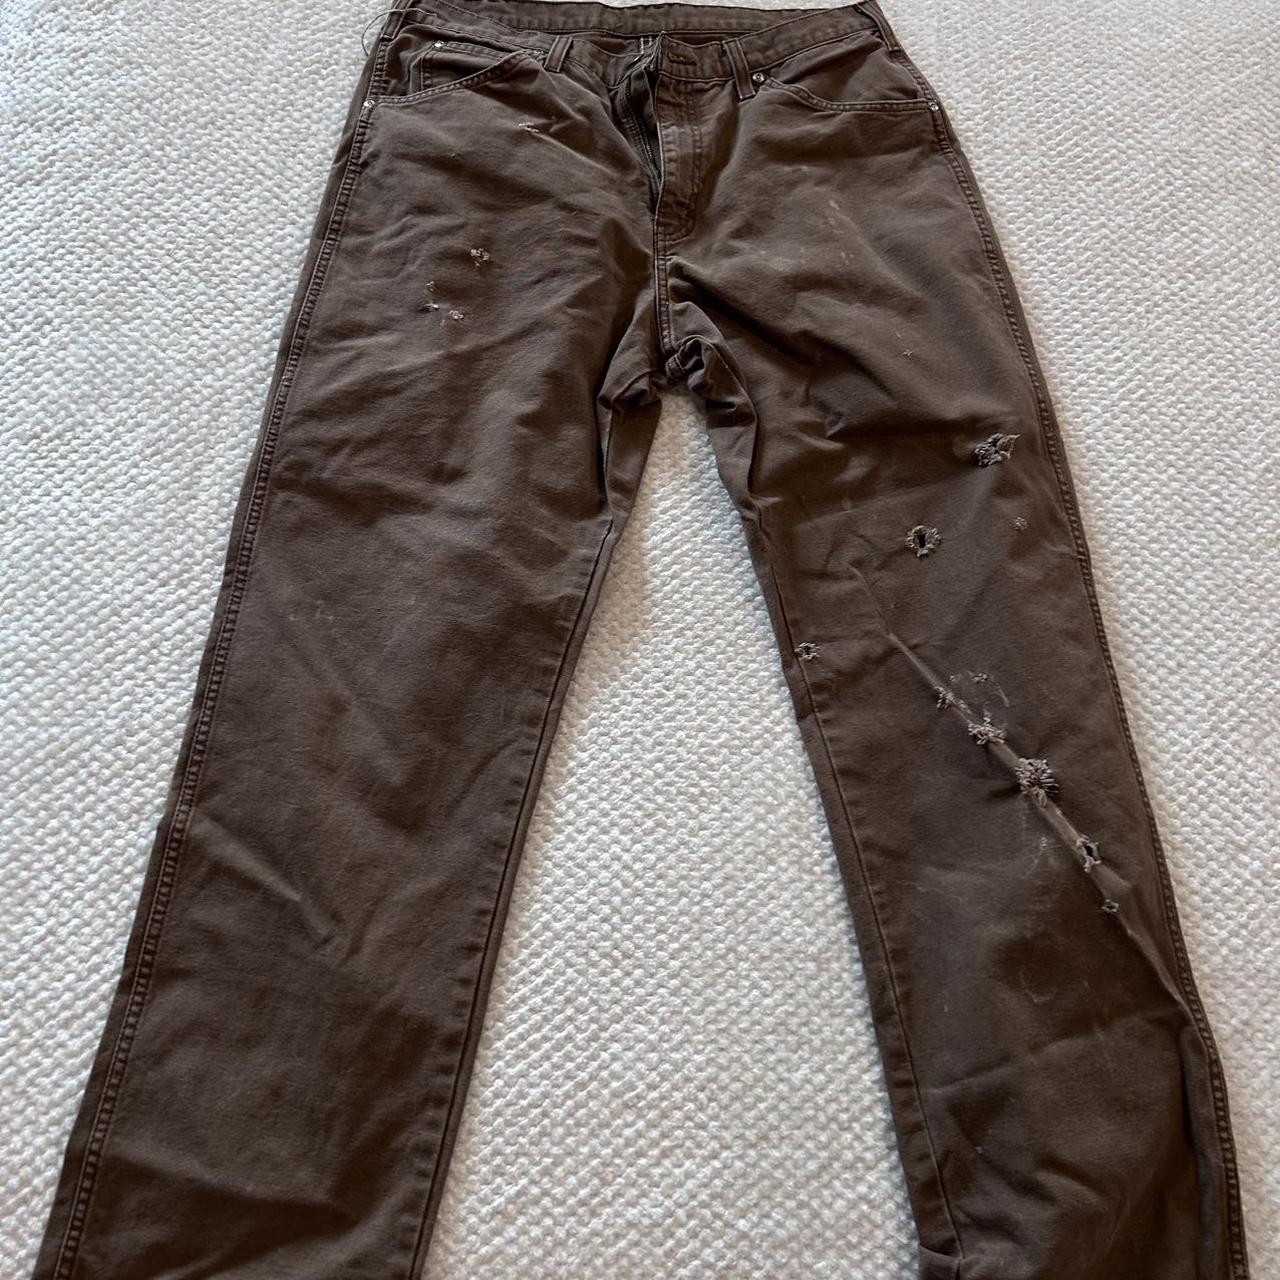 vintage dickies pants, cool distressing W34 L32 Leg... - Depop